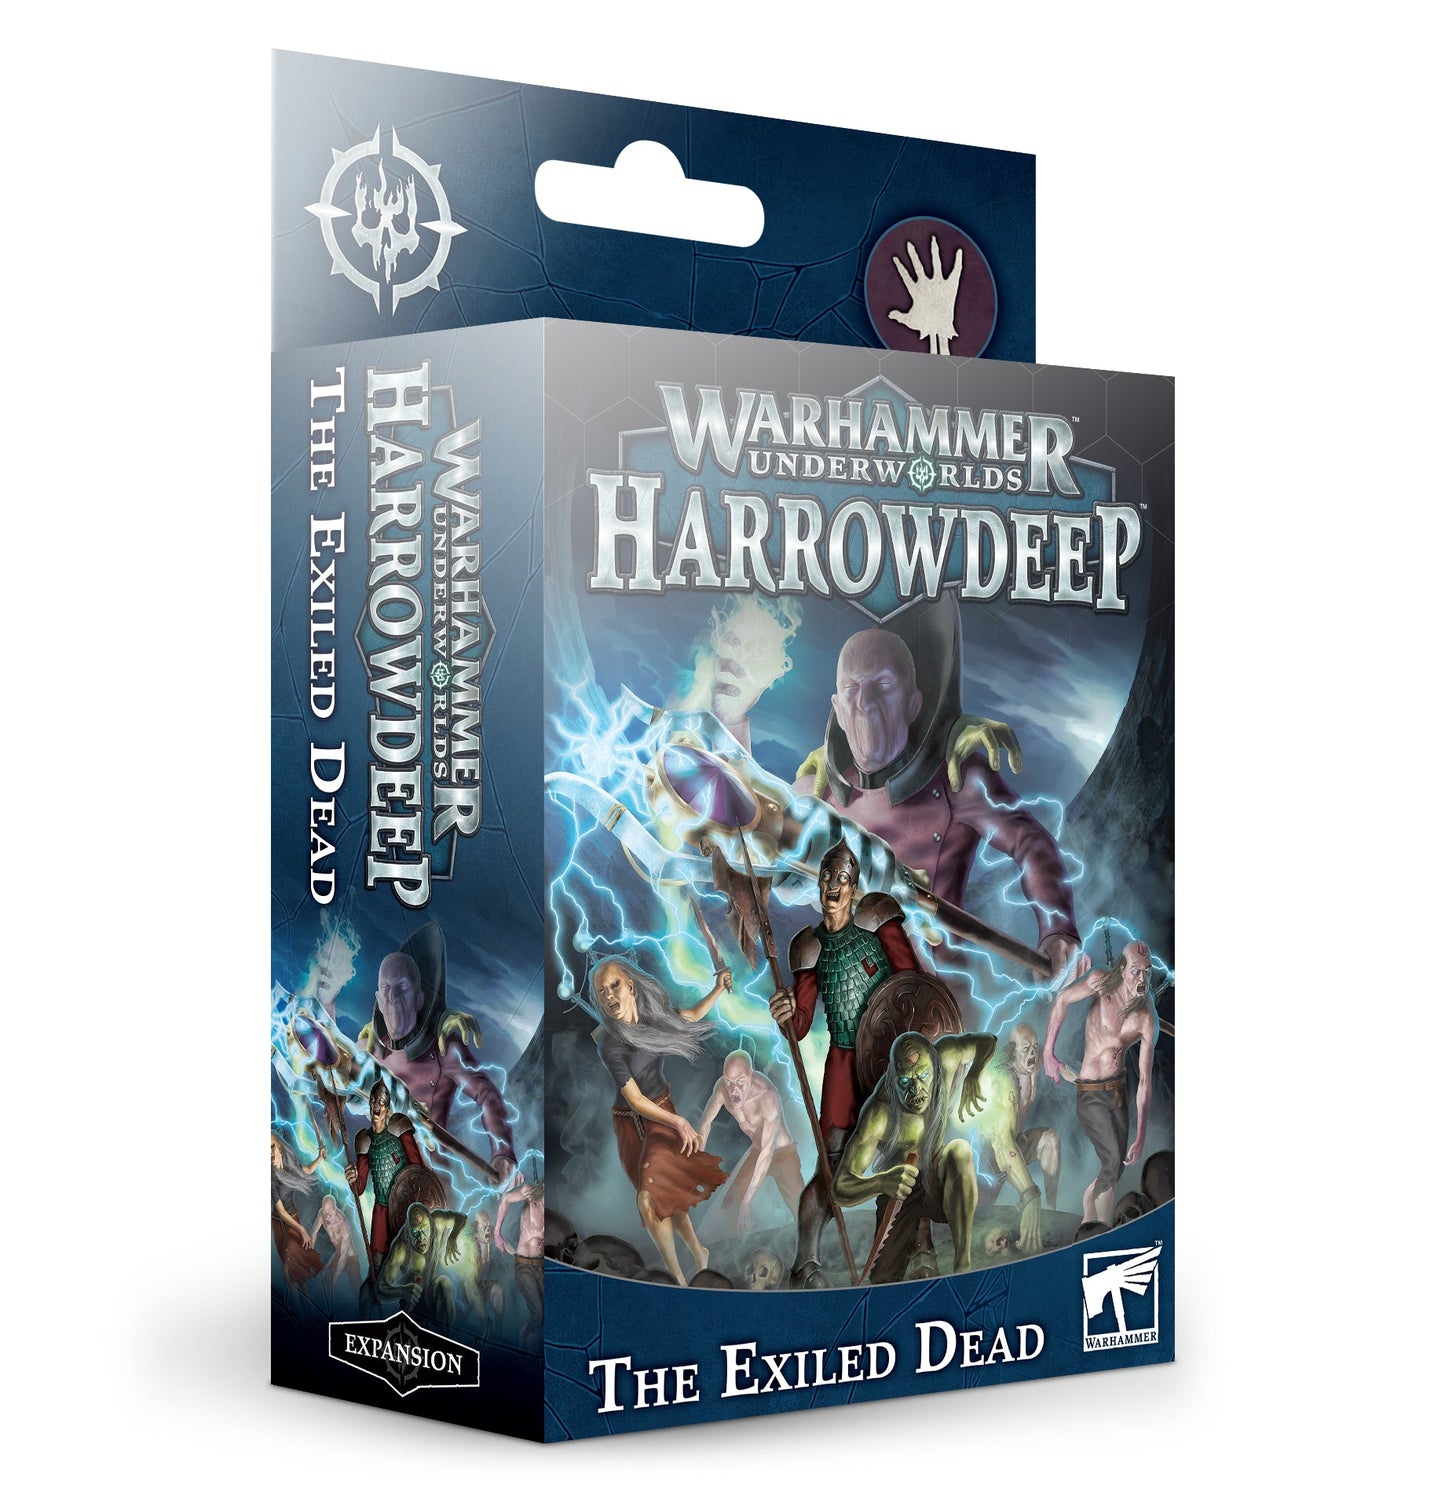 Warhammer Underworlds Harrowdeep: The Exiled Dead - Gamescape